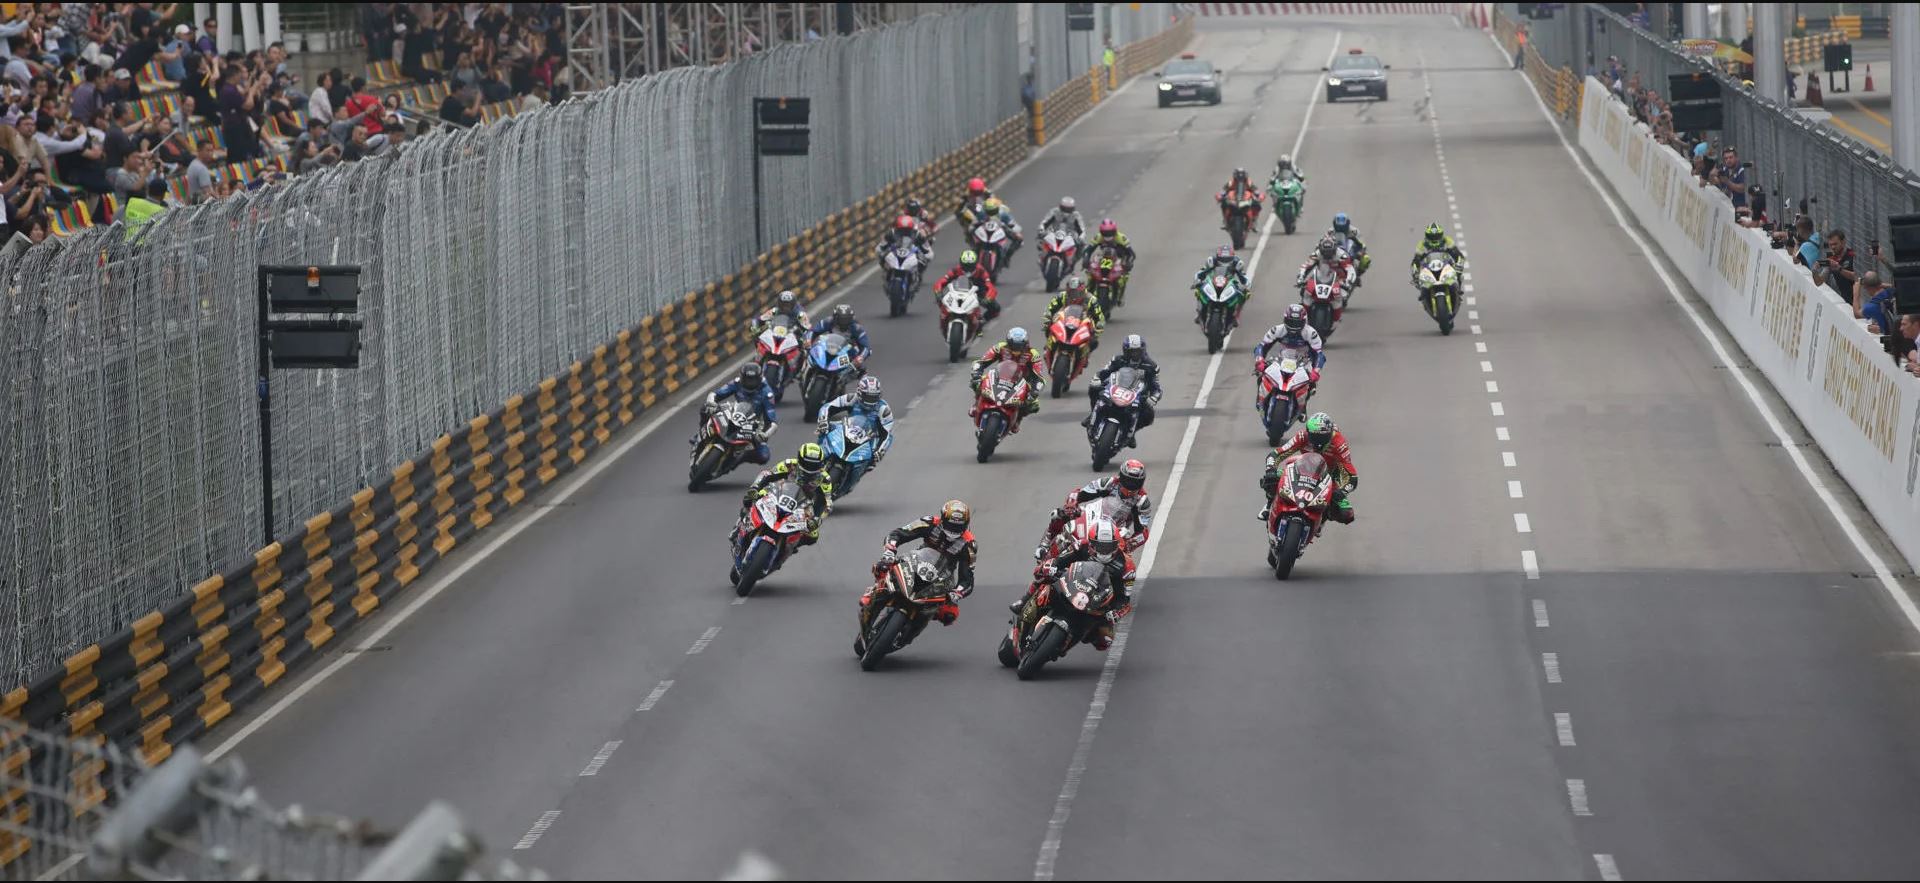 Motorcycle racers on the Guia Circuit in Macau